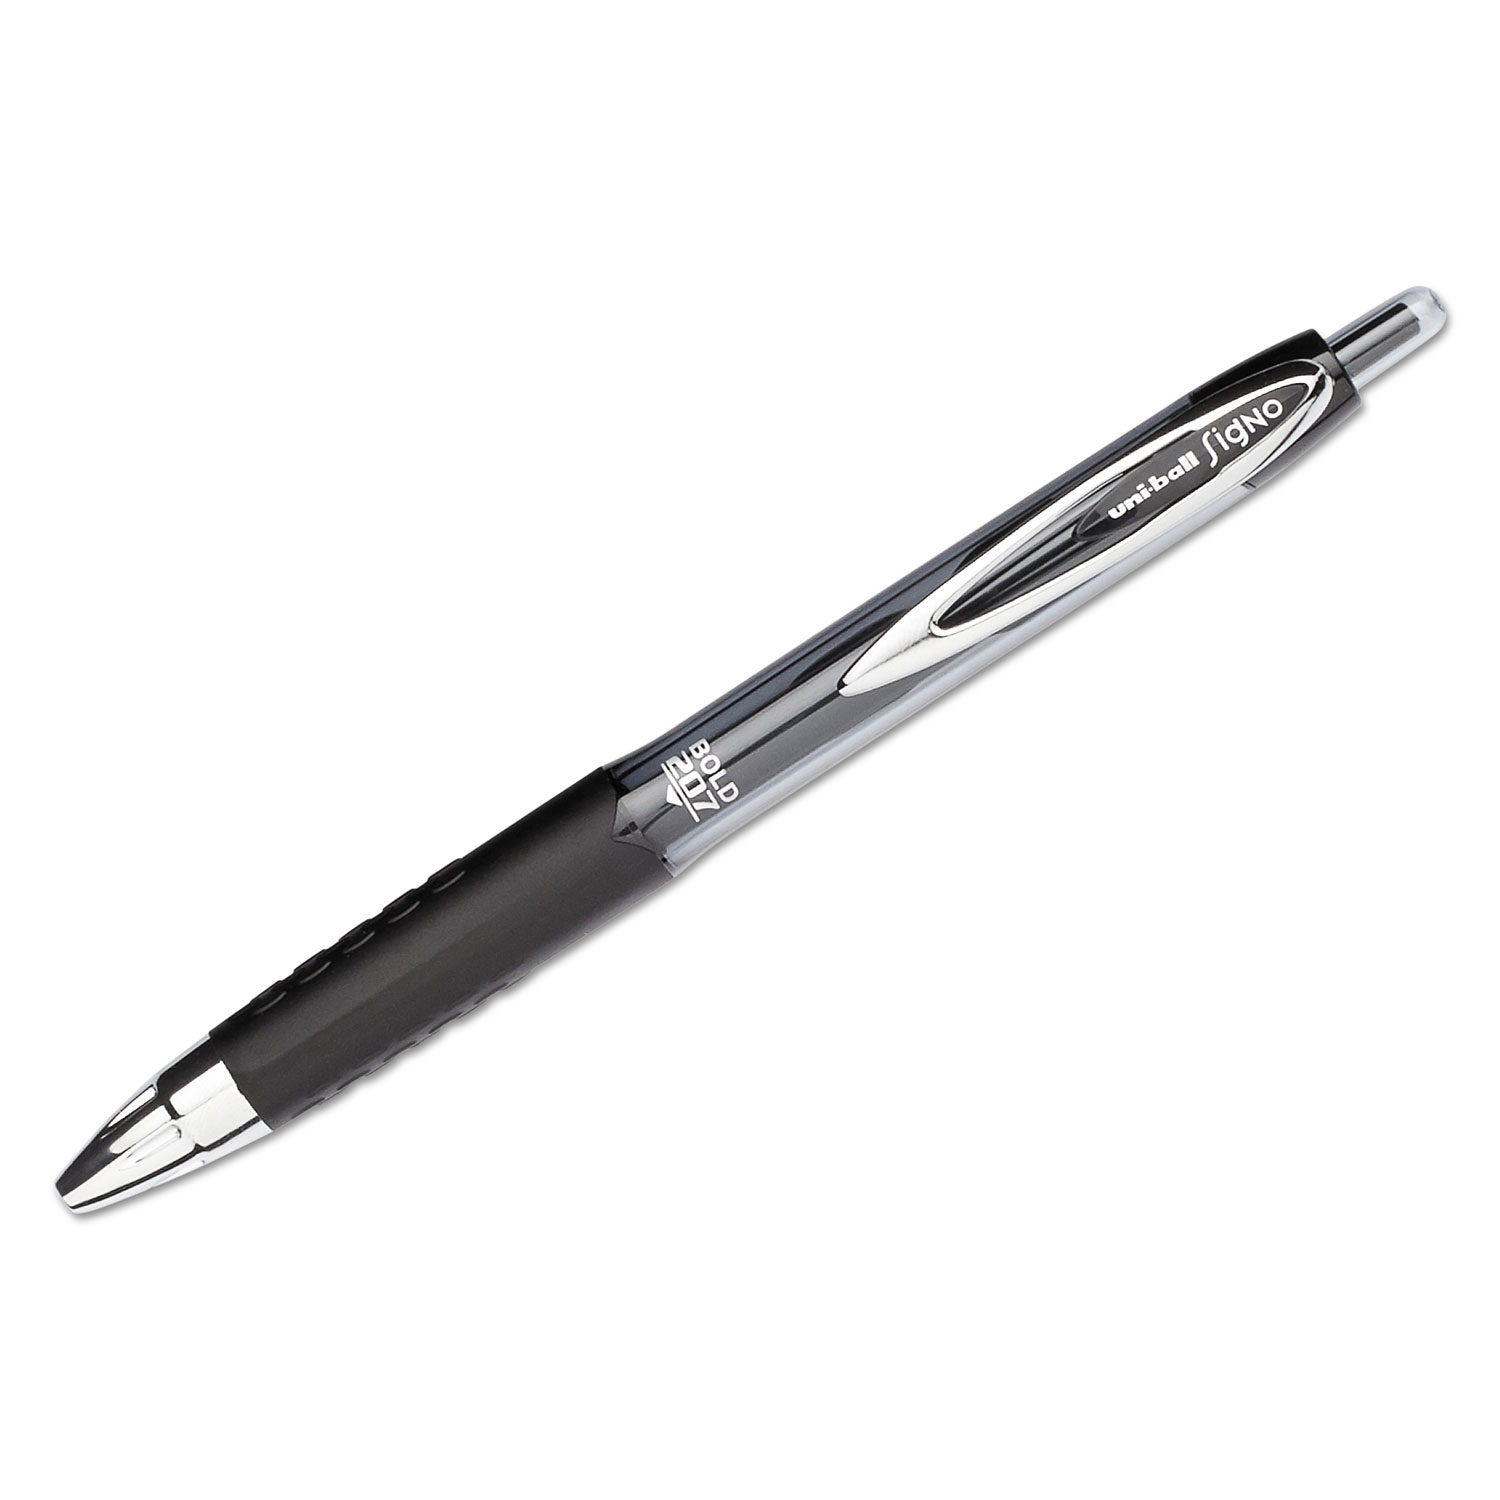 Signo 207 Retractable Gel Pen, Black Ink, 1mm, Dozen